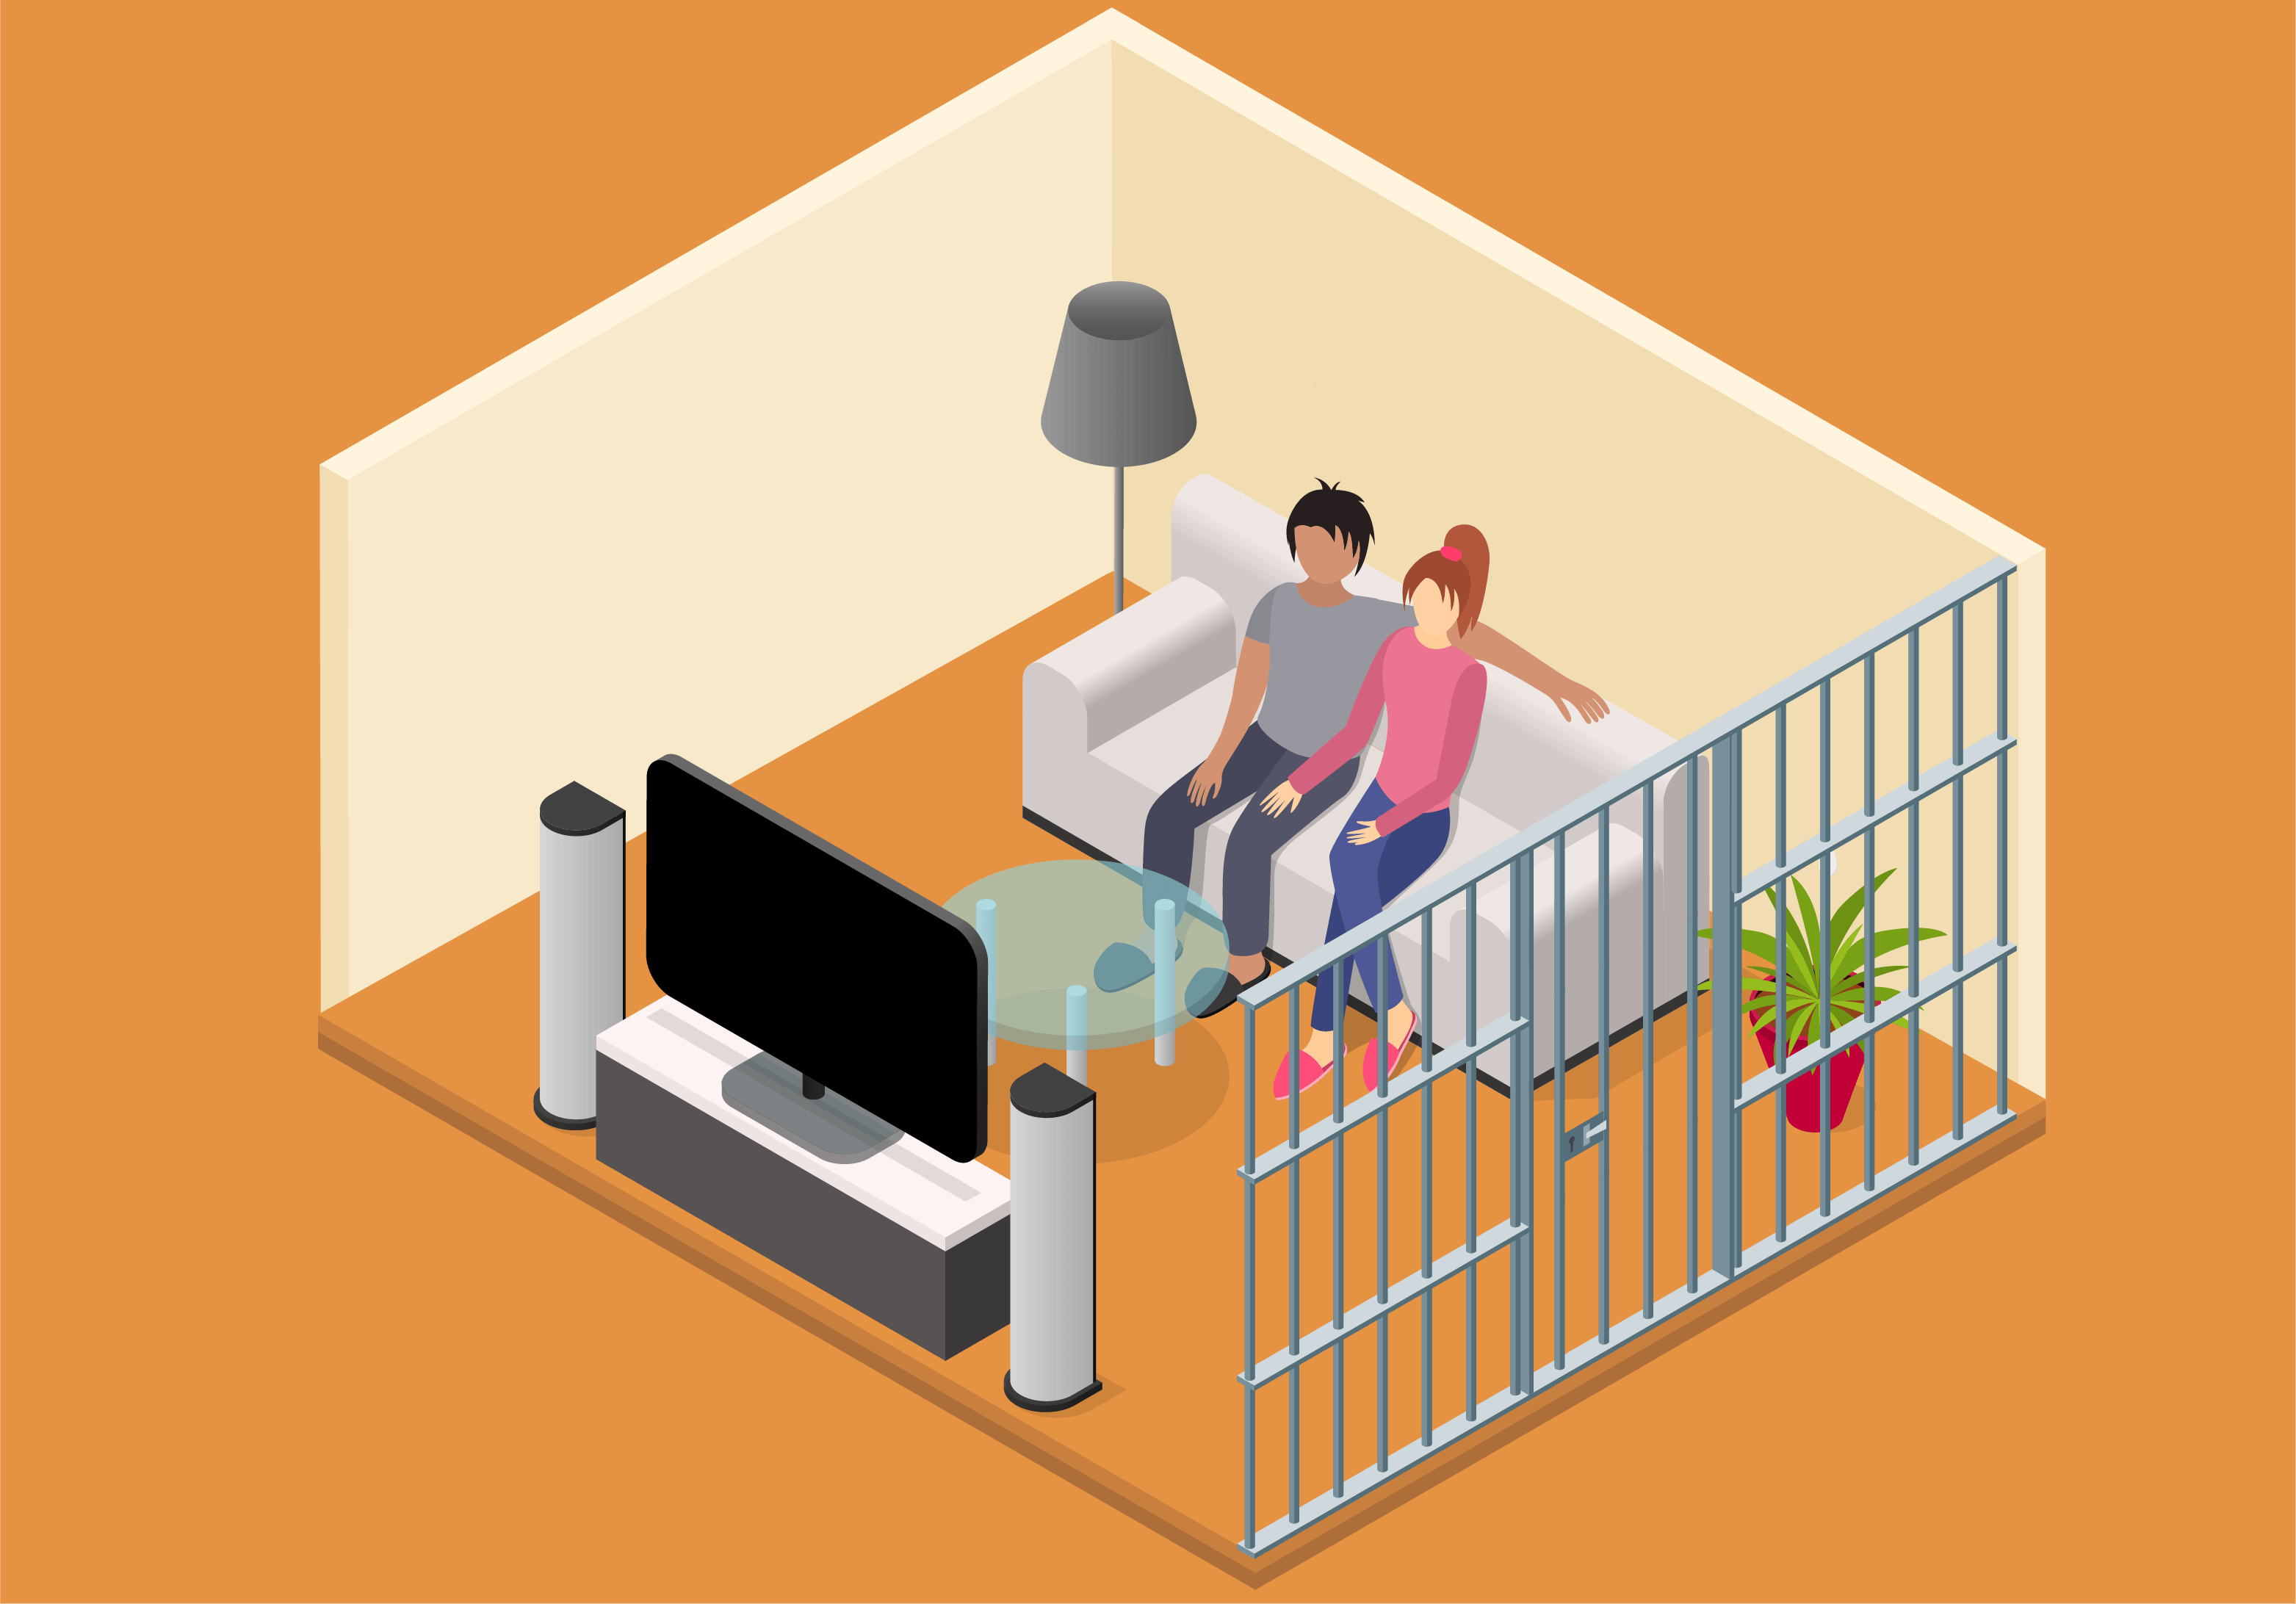 Ilustración isométrica de una pareja mirando TV enjaulados.